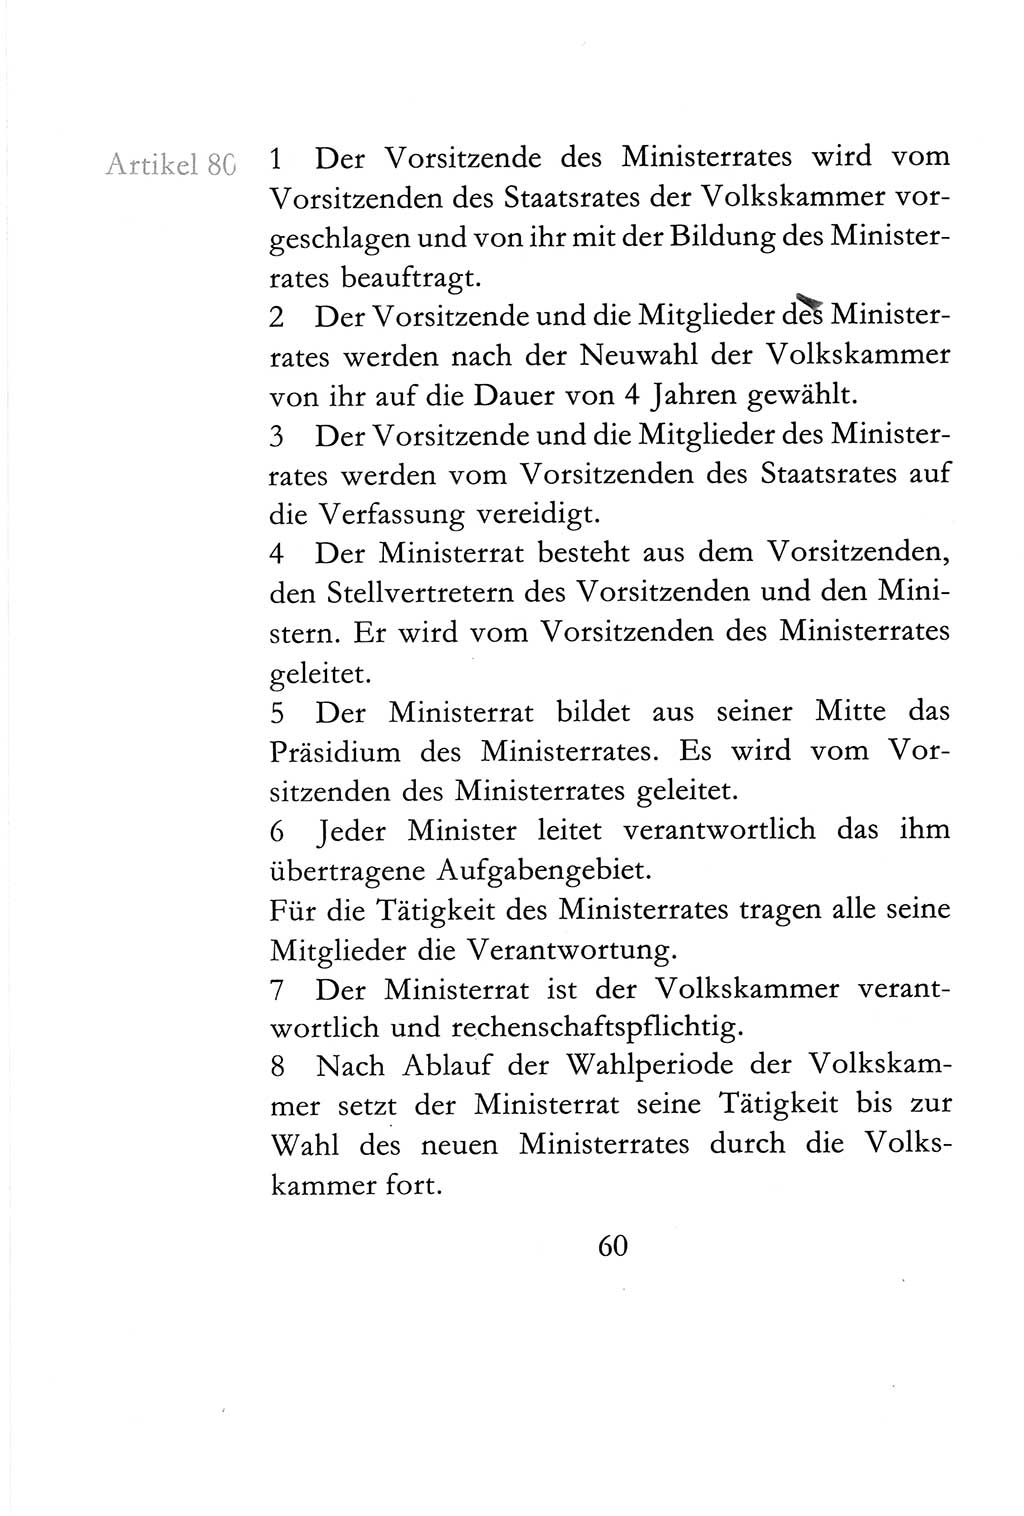 Verfassung der Deutschen Demokratischen Republik (DDR) vom 6. April 1968, Seite 60 (Verf. DDR 1968, S. 60)